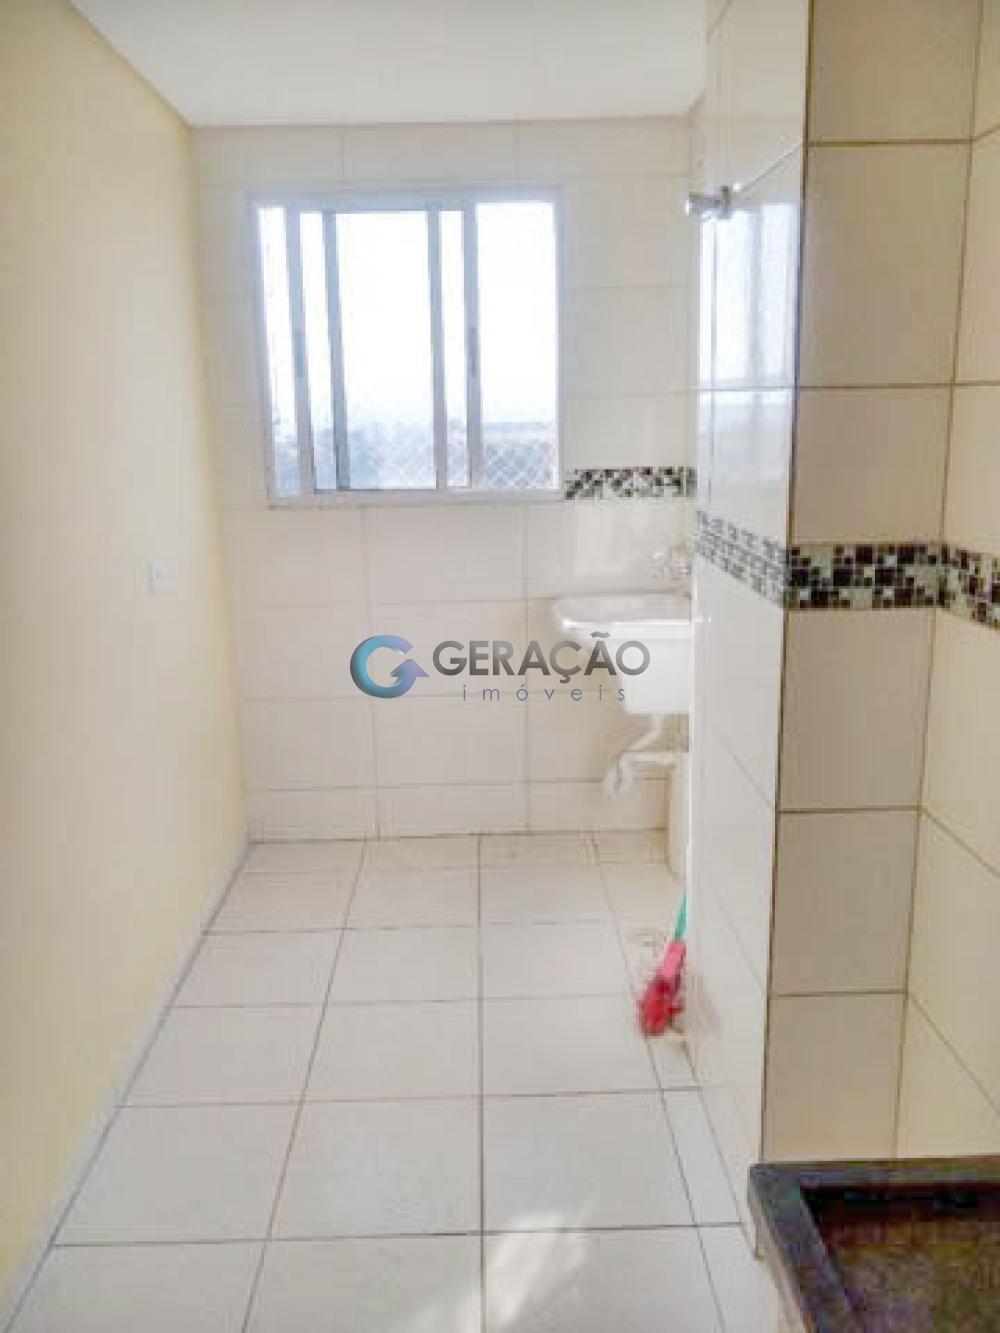 Comprar Apartamento / Padrão em São José dos Campos R$ 250.000,00 - Foto 8